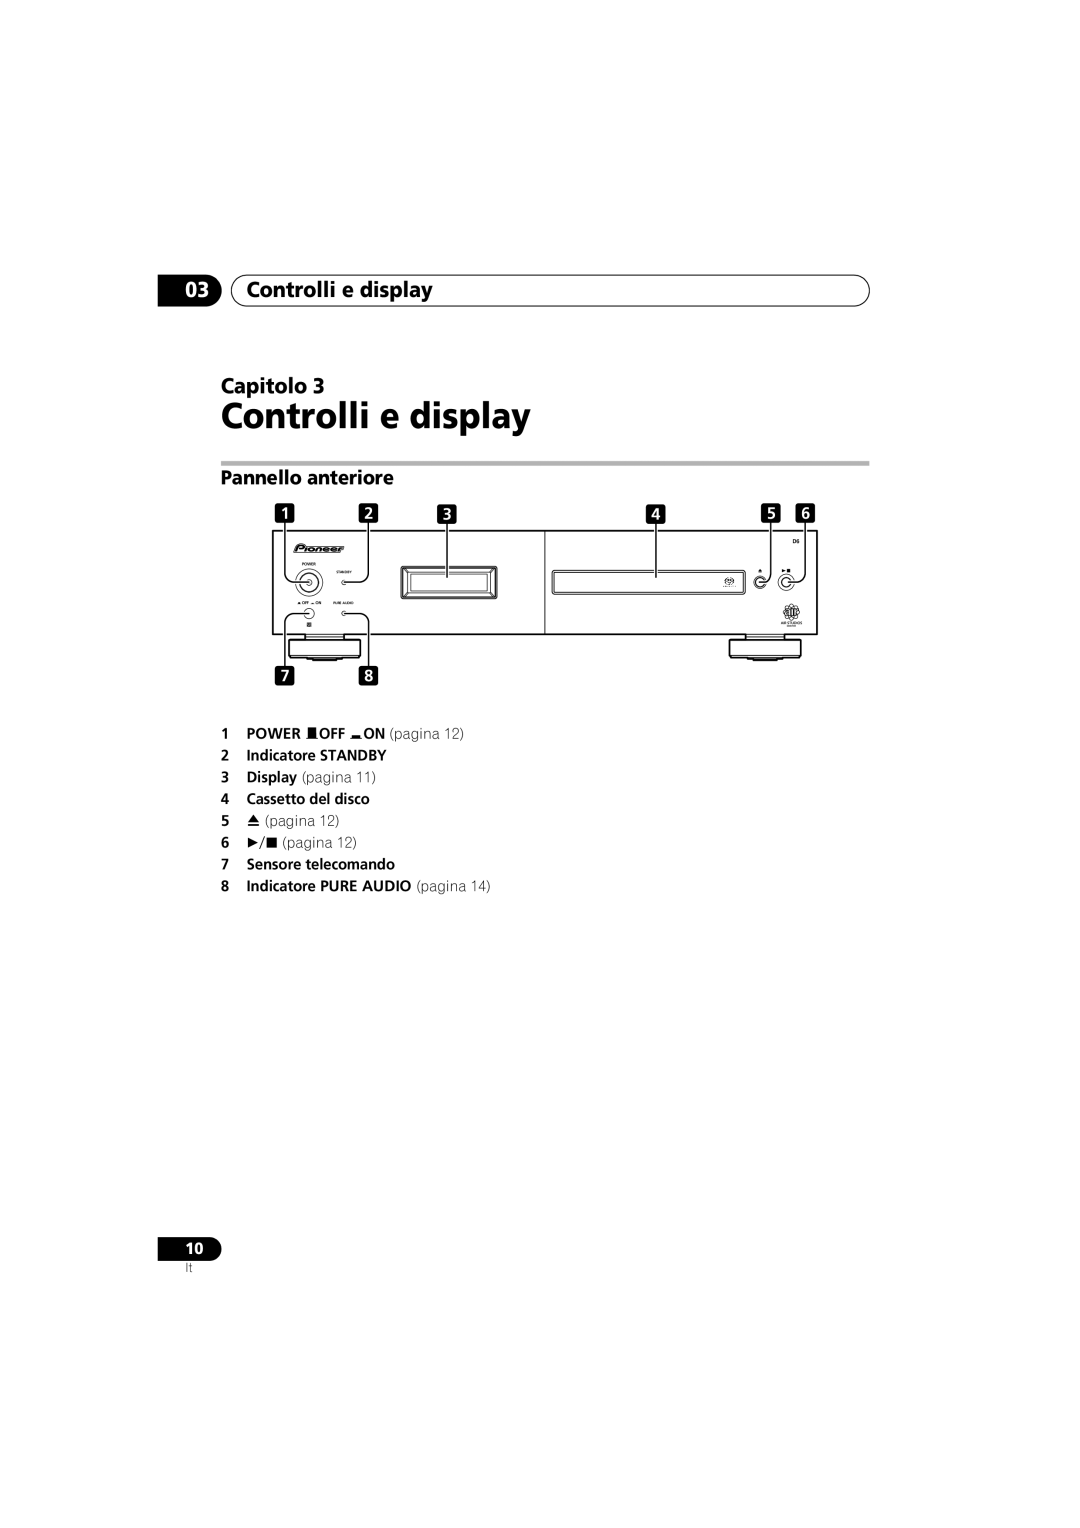 Pioneer PD-D6-J manual 03Controlli e display Capitolo, Pannello anteriore, Power, Standby, Pure Audio 